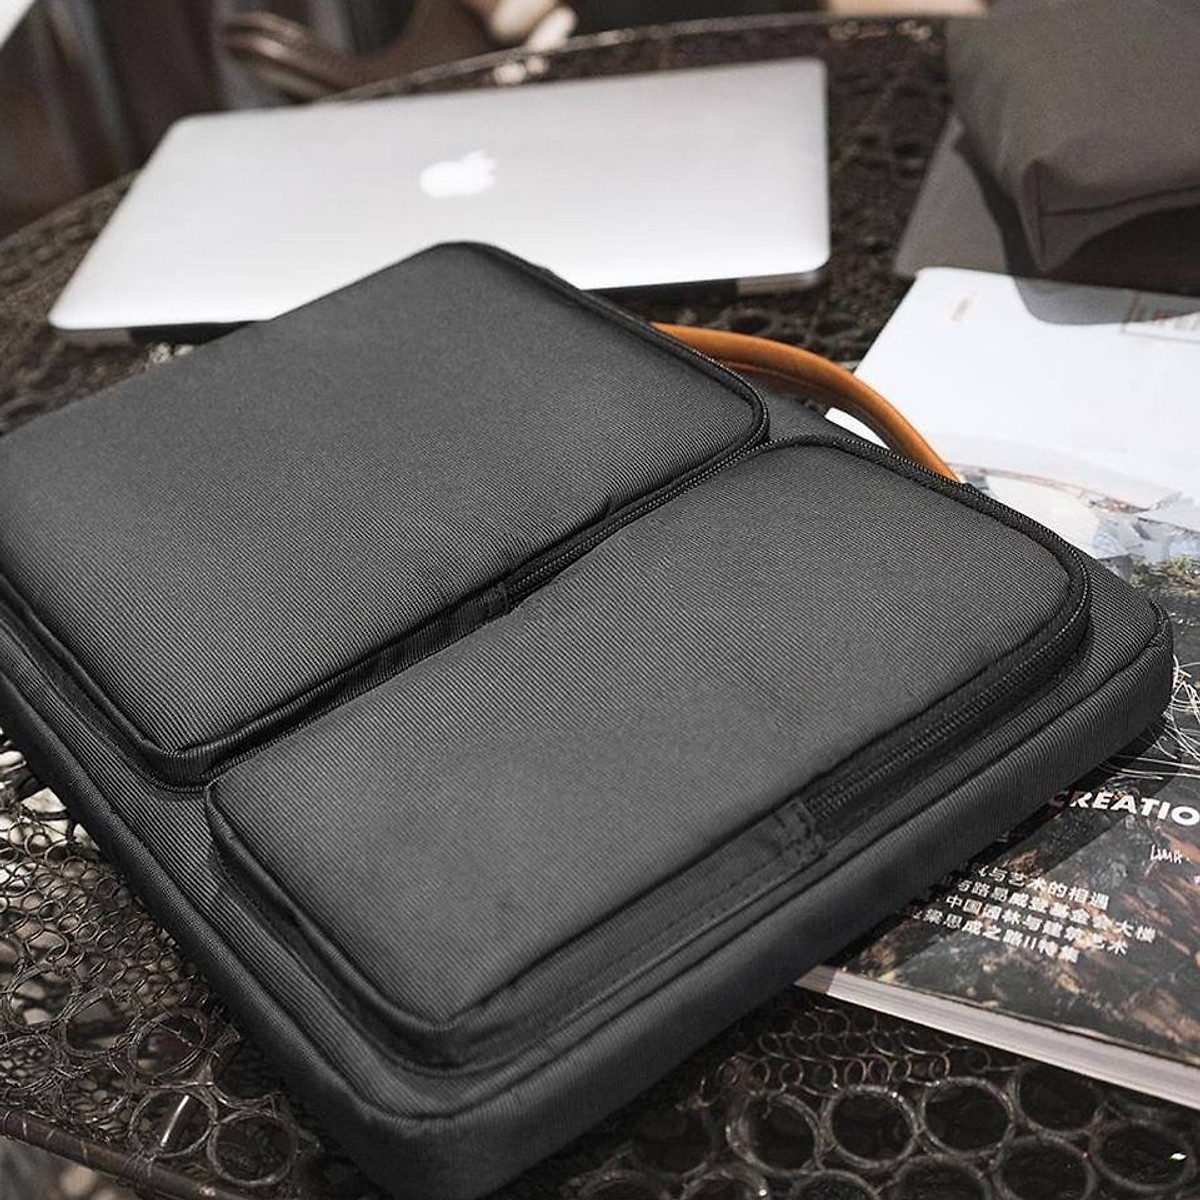 Túi xách, cặp da bảo vệ laptop 13 -14inch nhiều ngăn tiện dụng